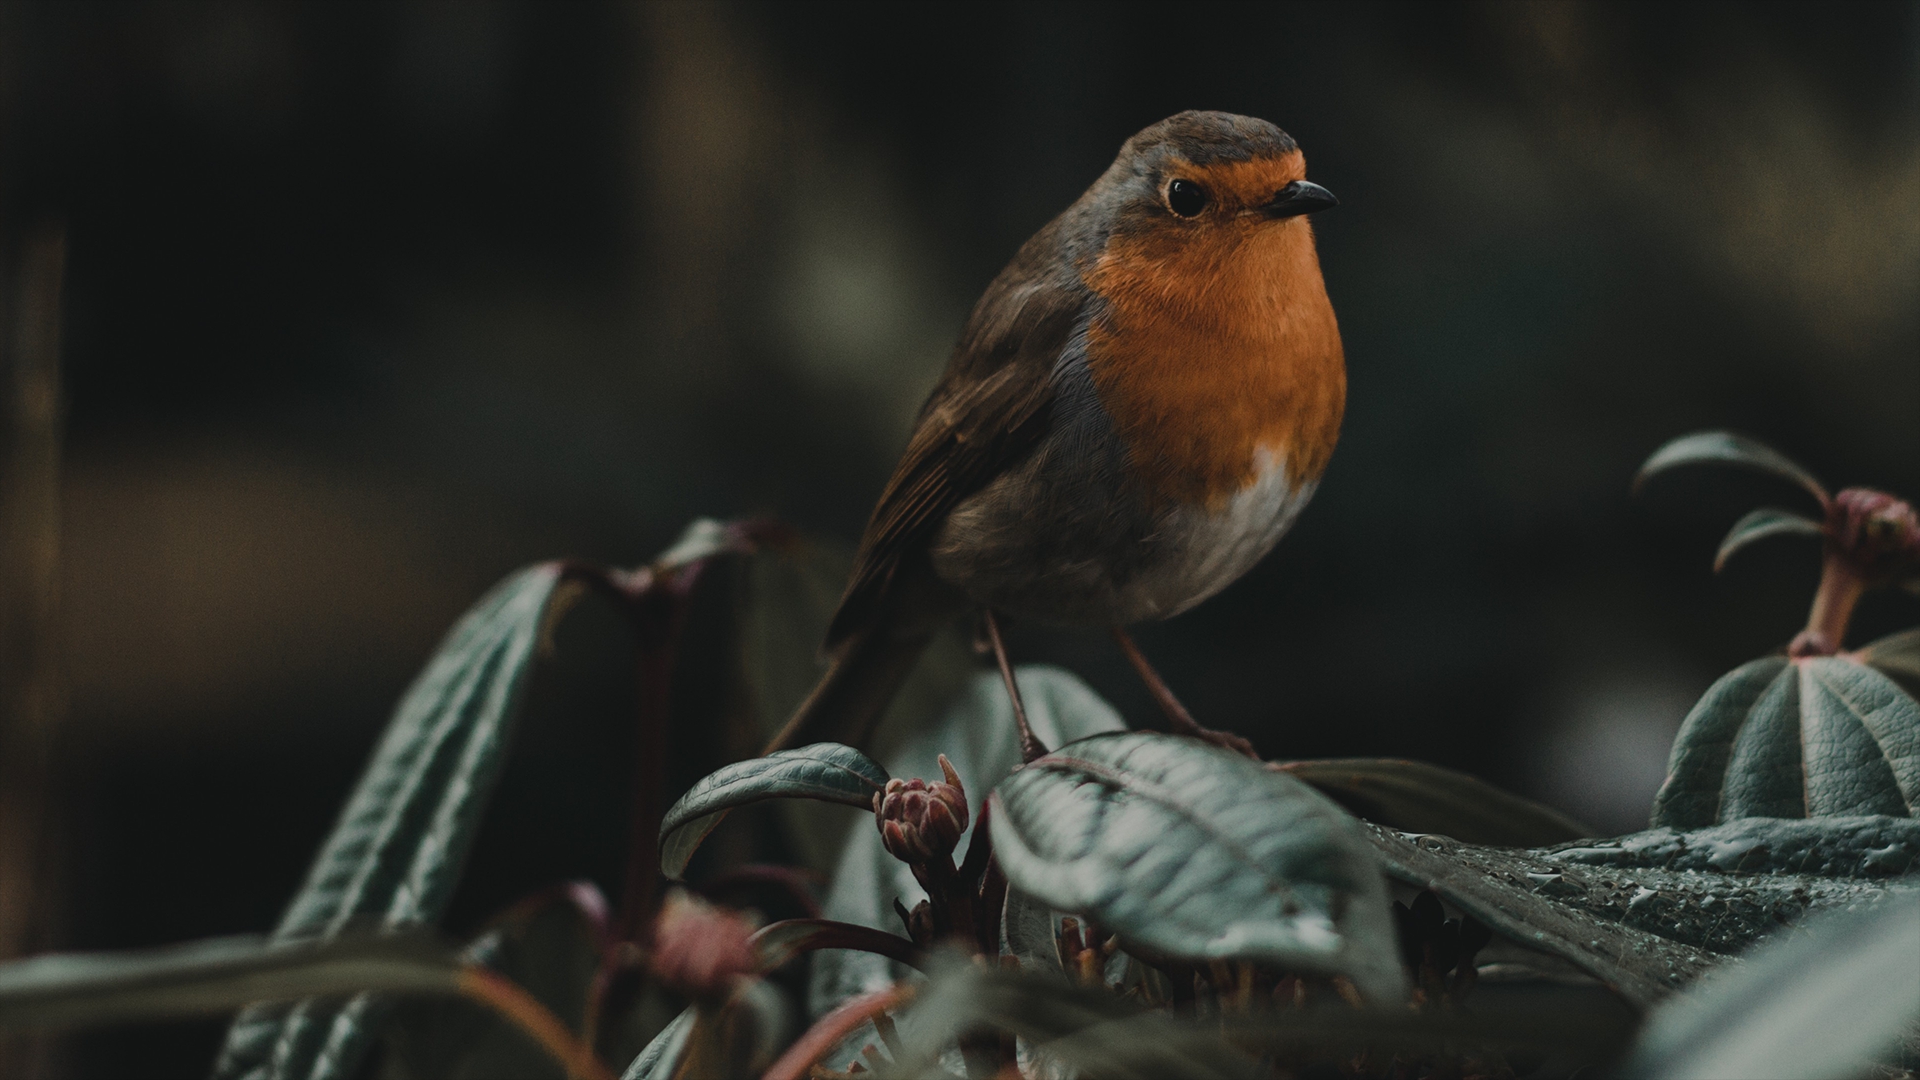 Wallpaper Robin, bird, cute, close up